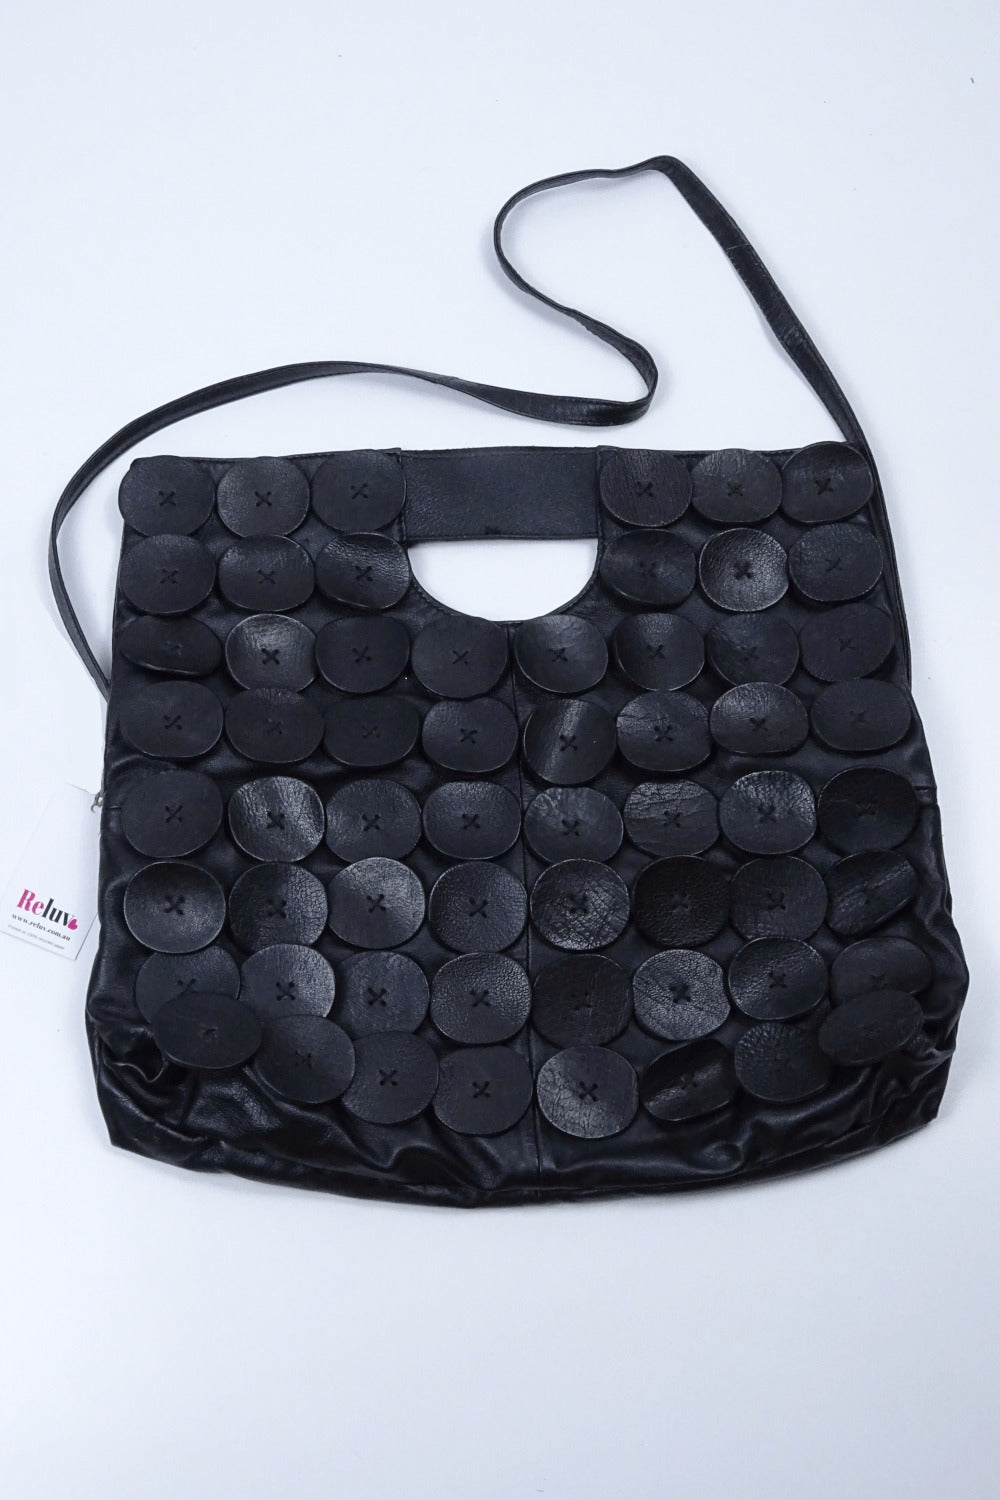 Gorman Supersoft Black Leather Bag